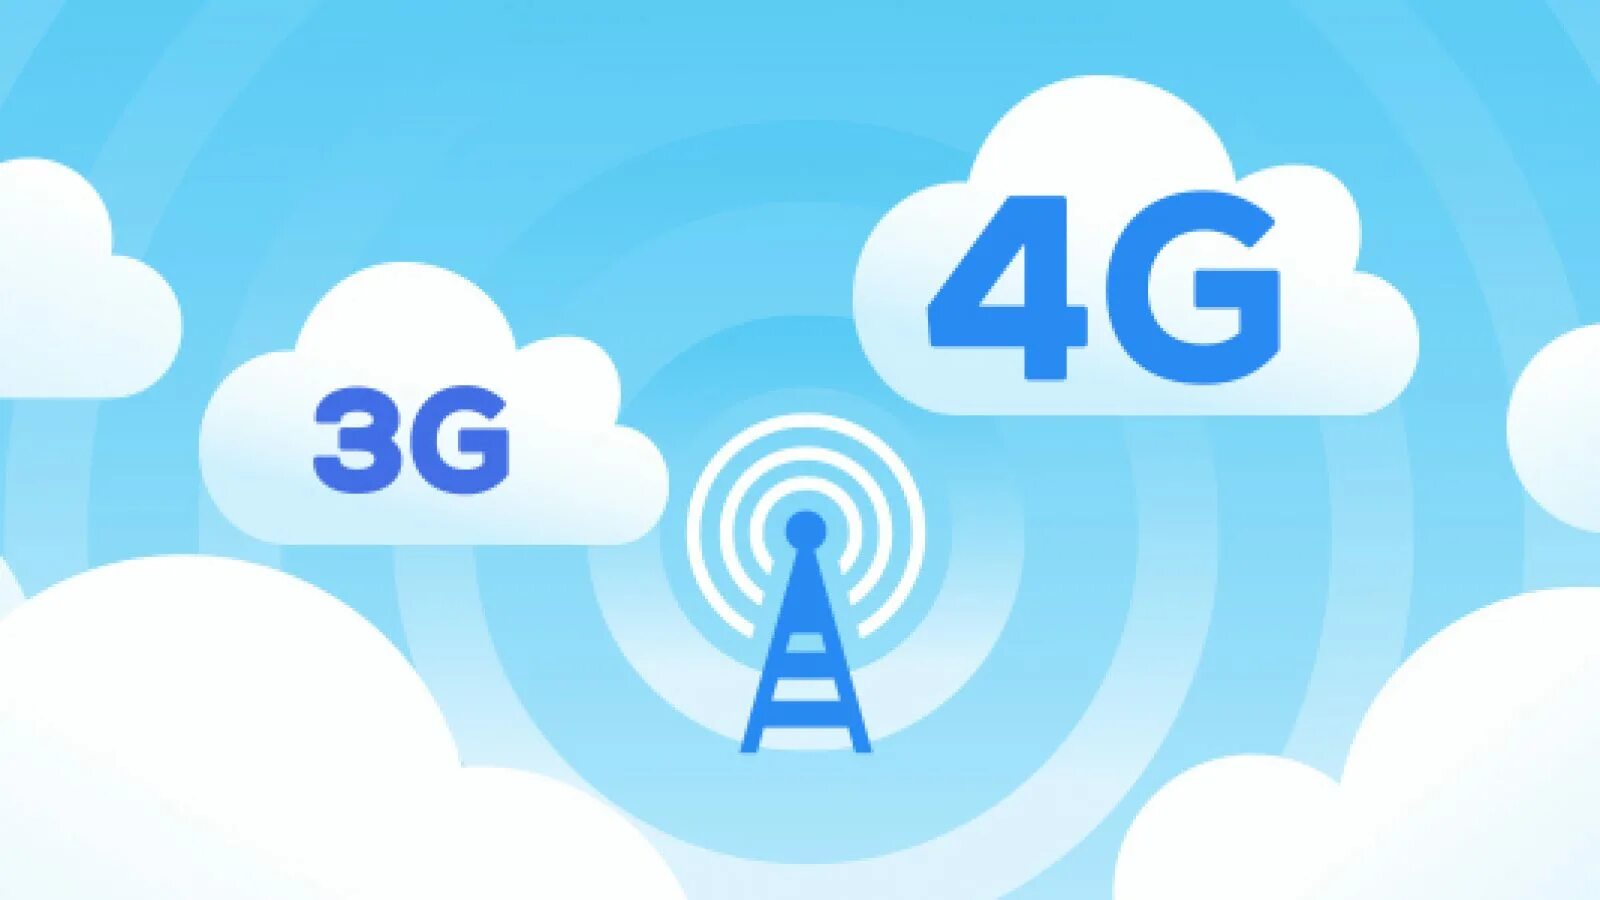 W 4g. 3g 4g. 3g интернет. Мобильный интернет 4g. Значок 3g.